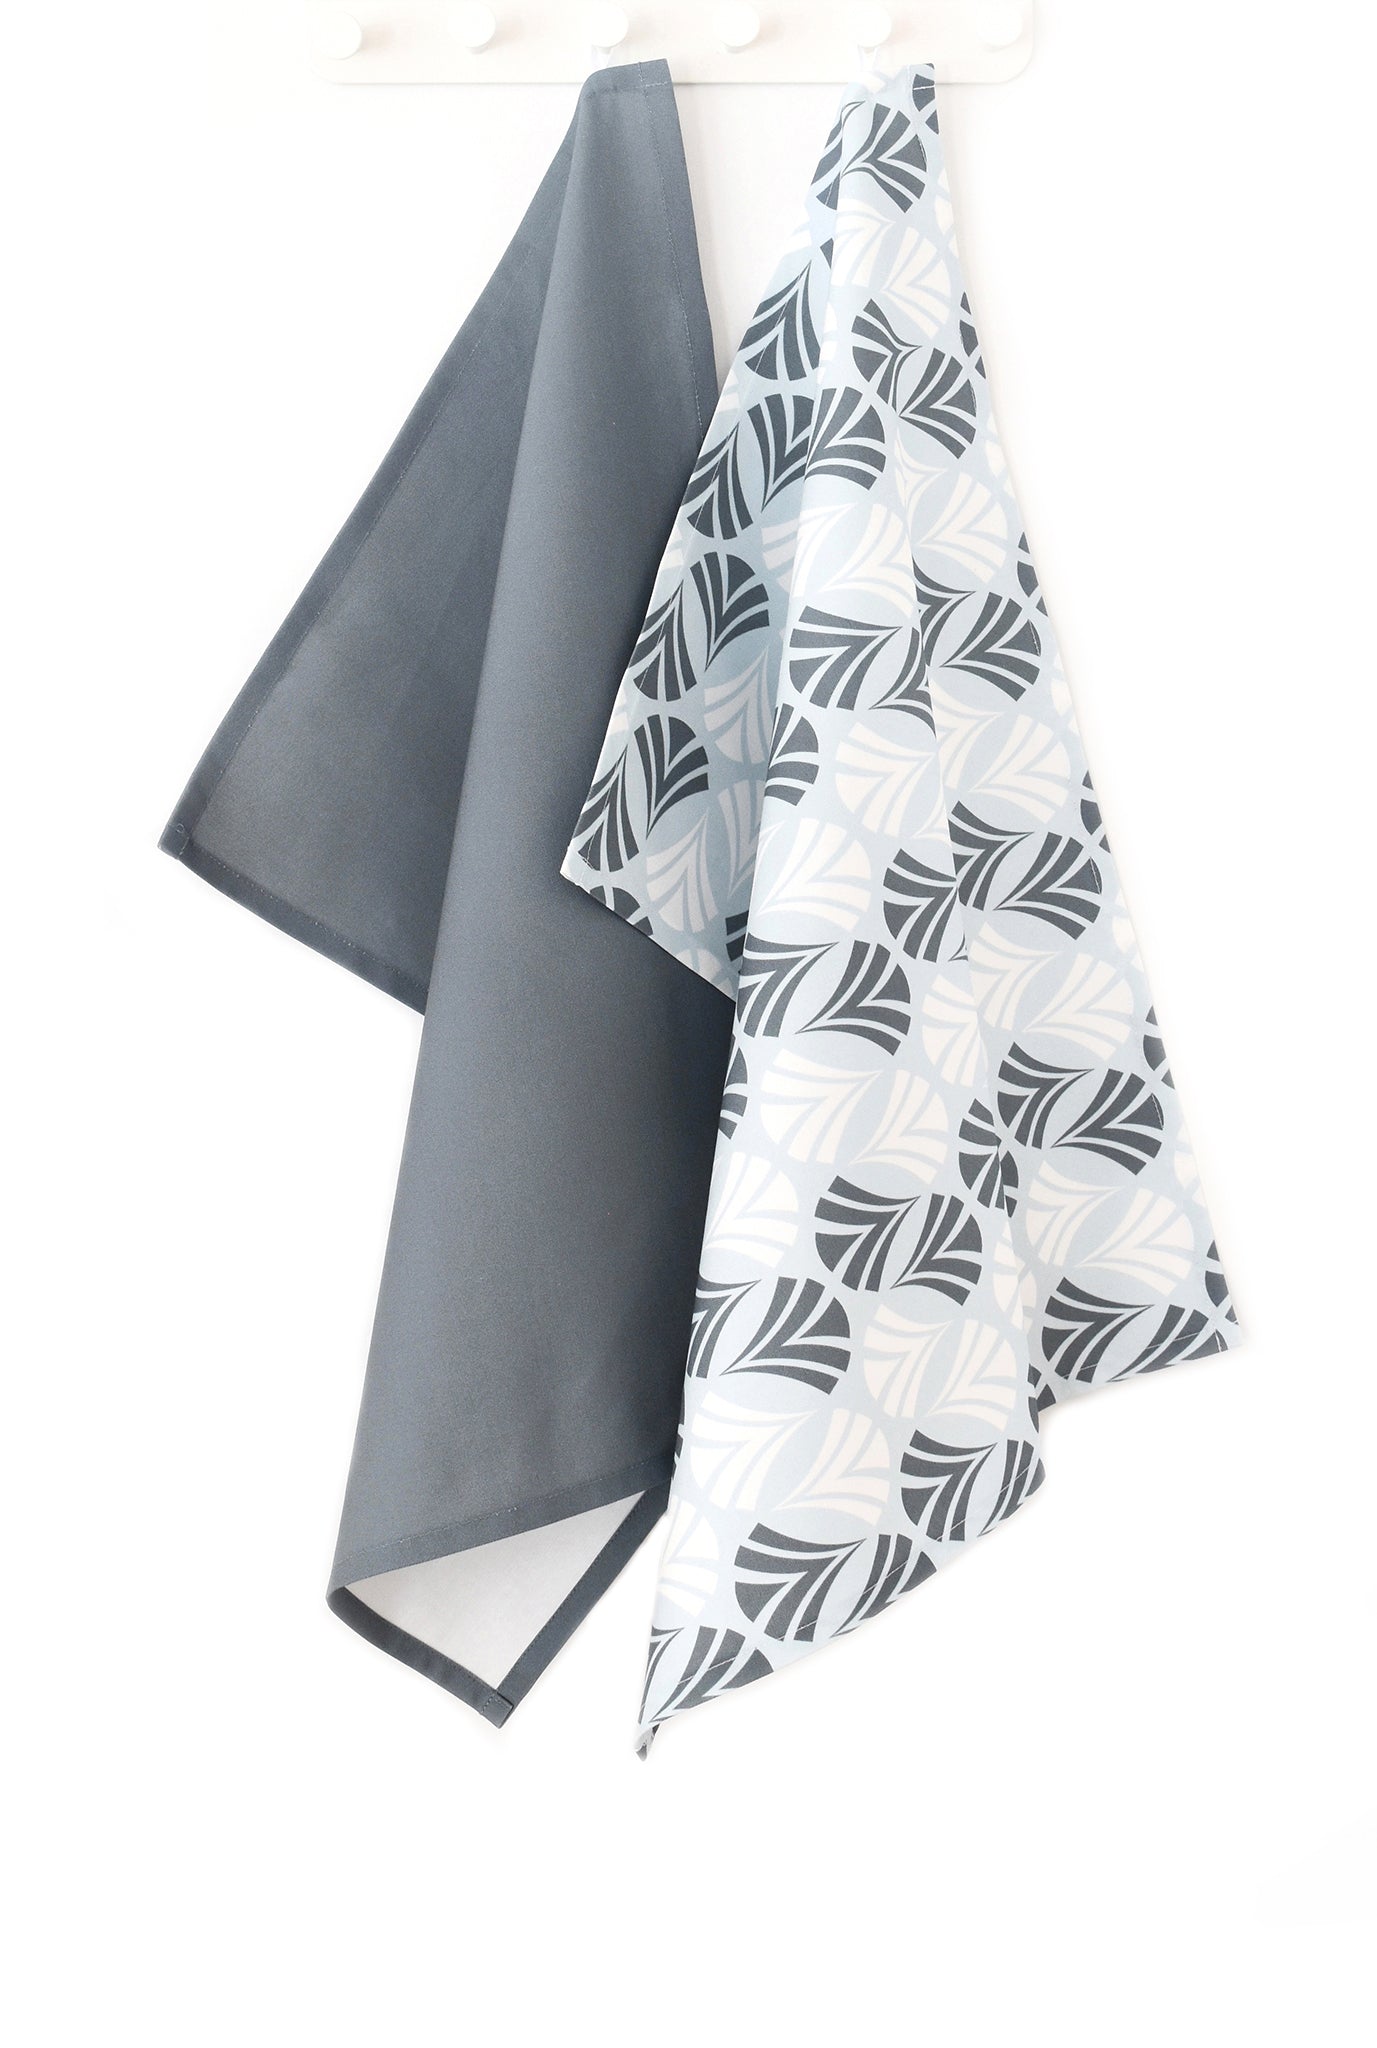 Waltz Linen Cotton Tea Towel (18.5x25) – Set of 2 (Patterned Pale